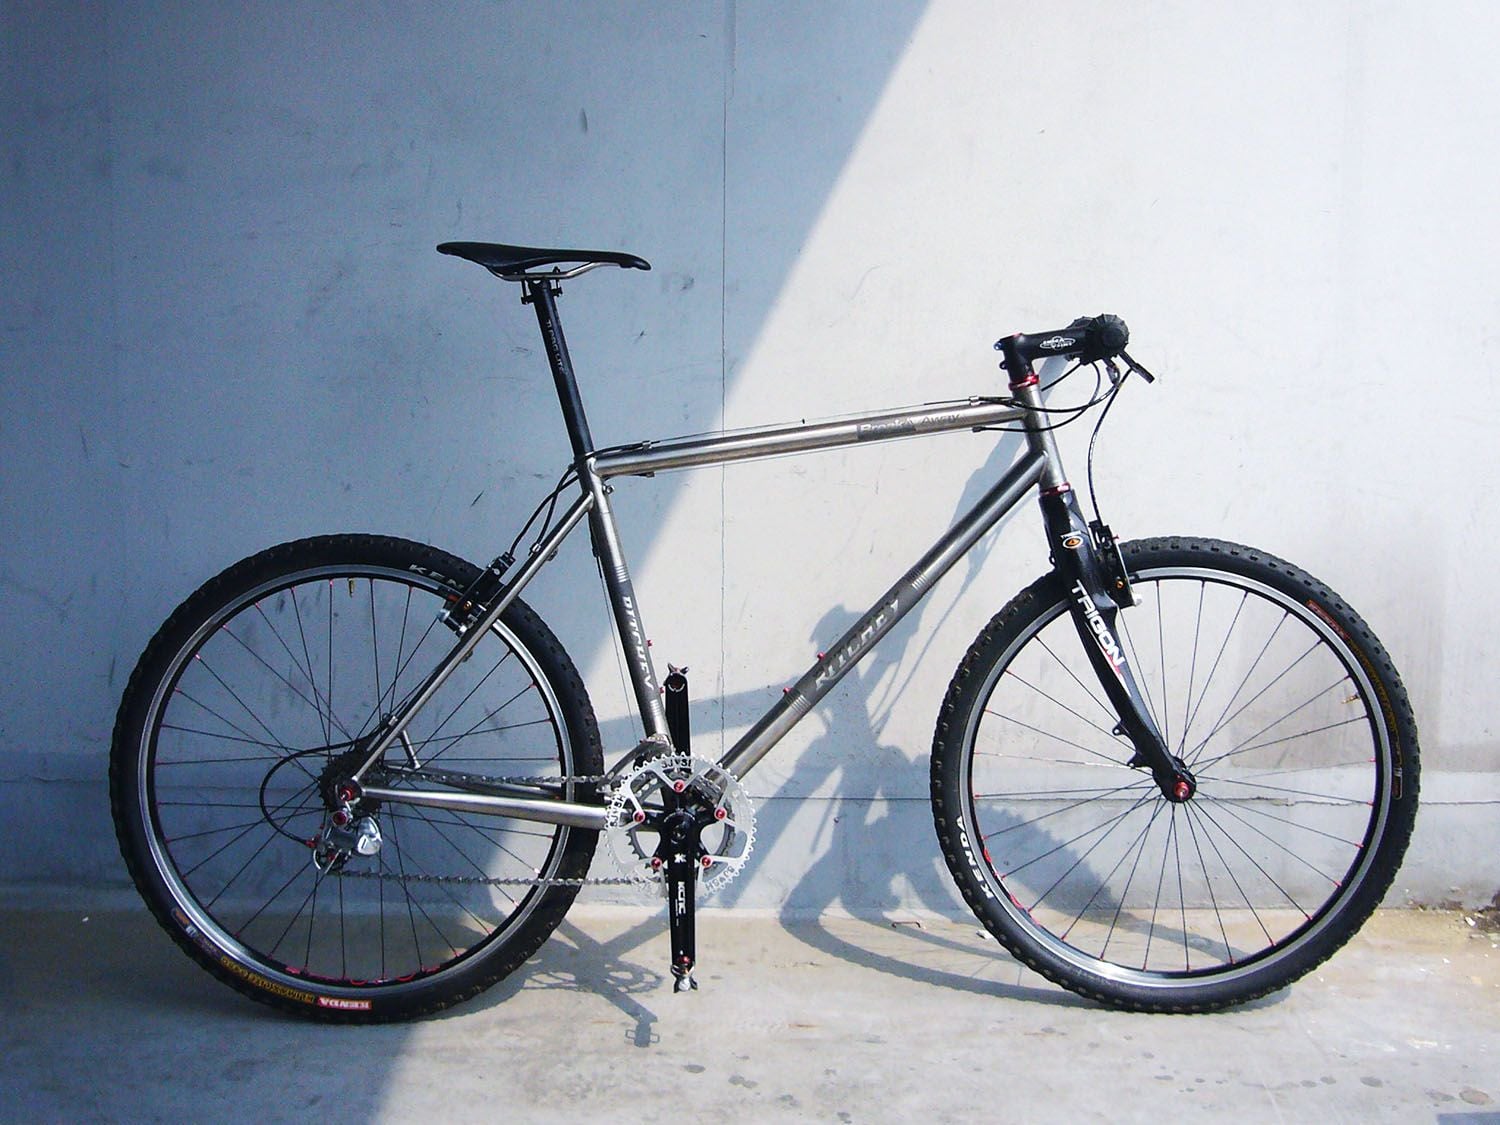 ritchey breakaway titanium gravel travel bike